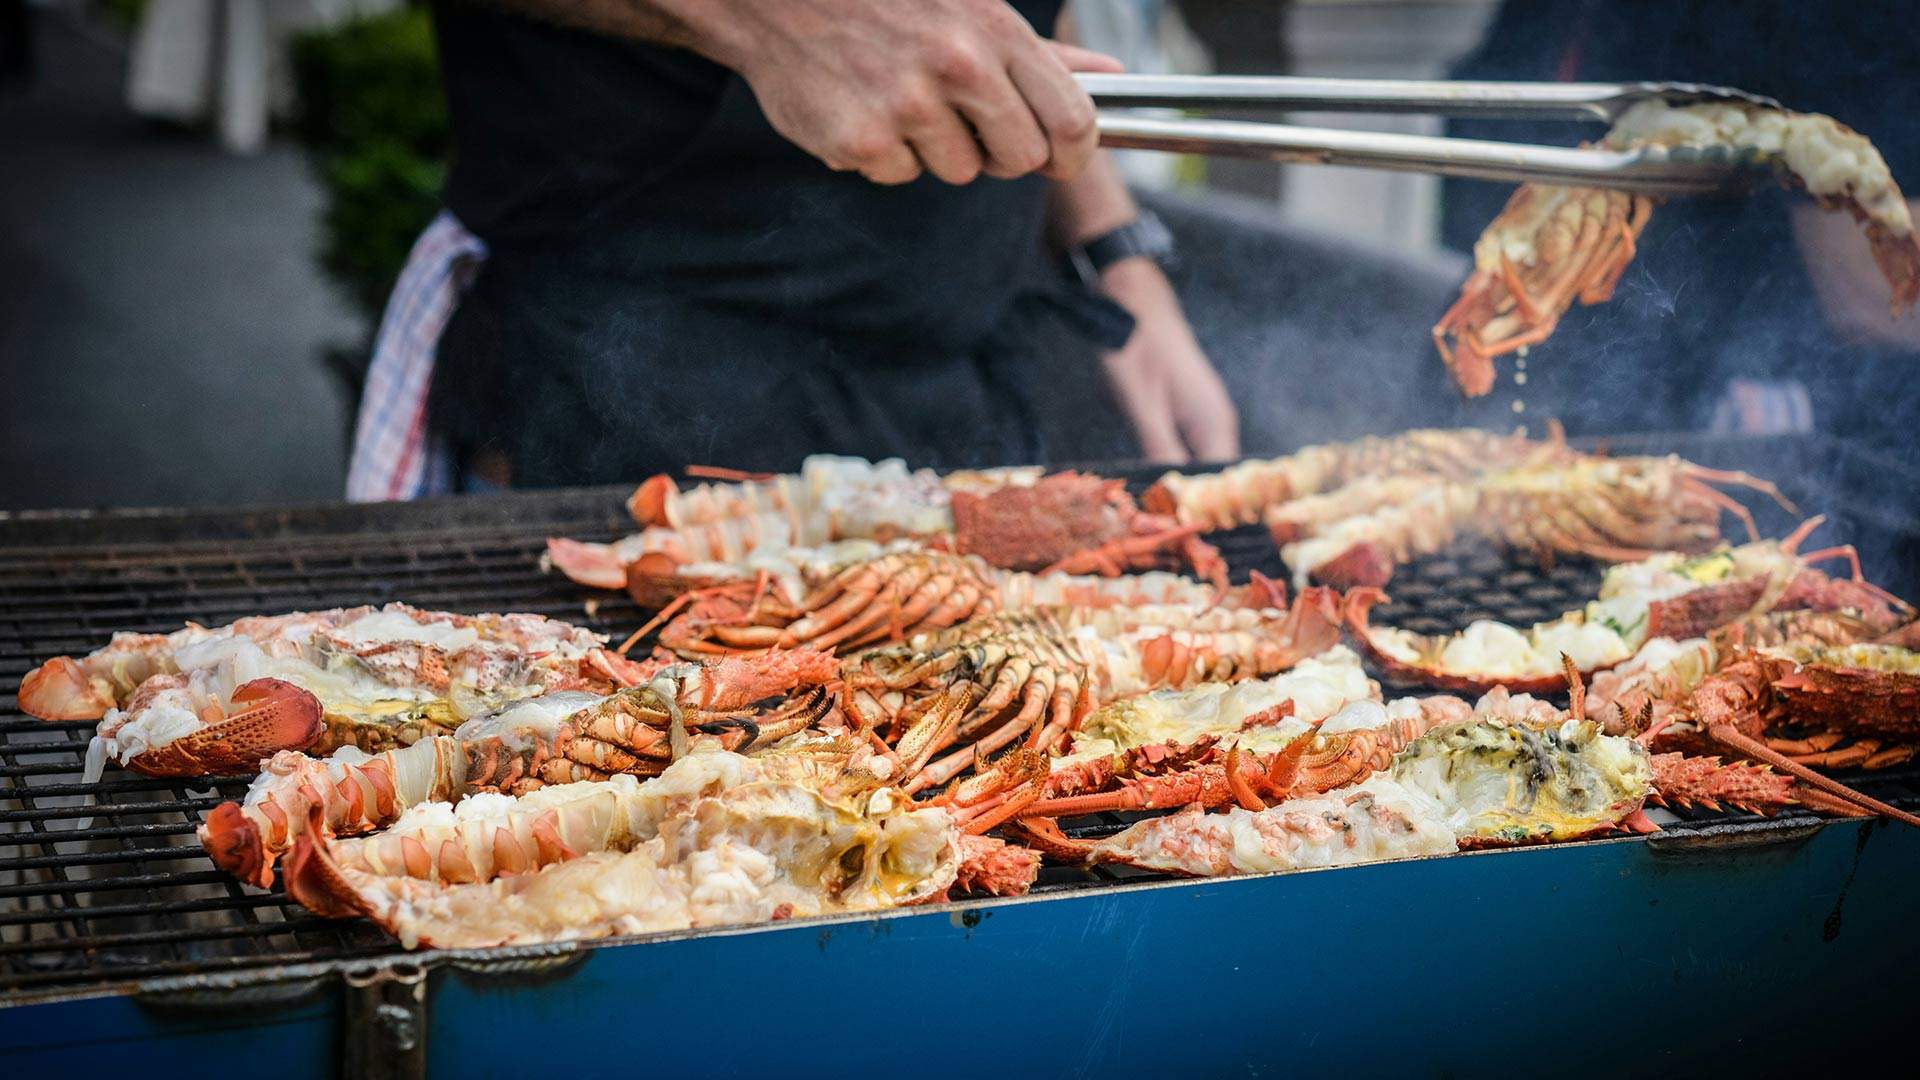 Wynnum Manly Seafood Festival 2020